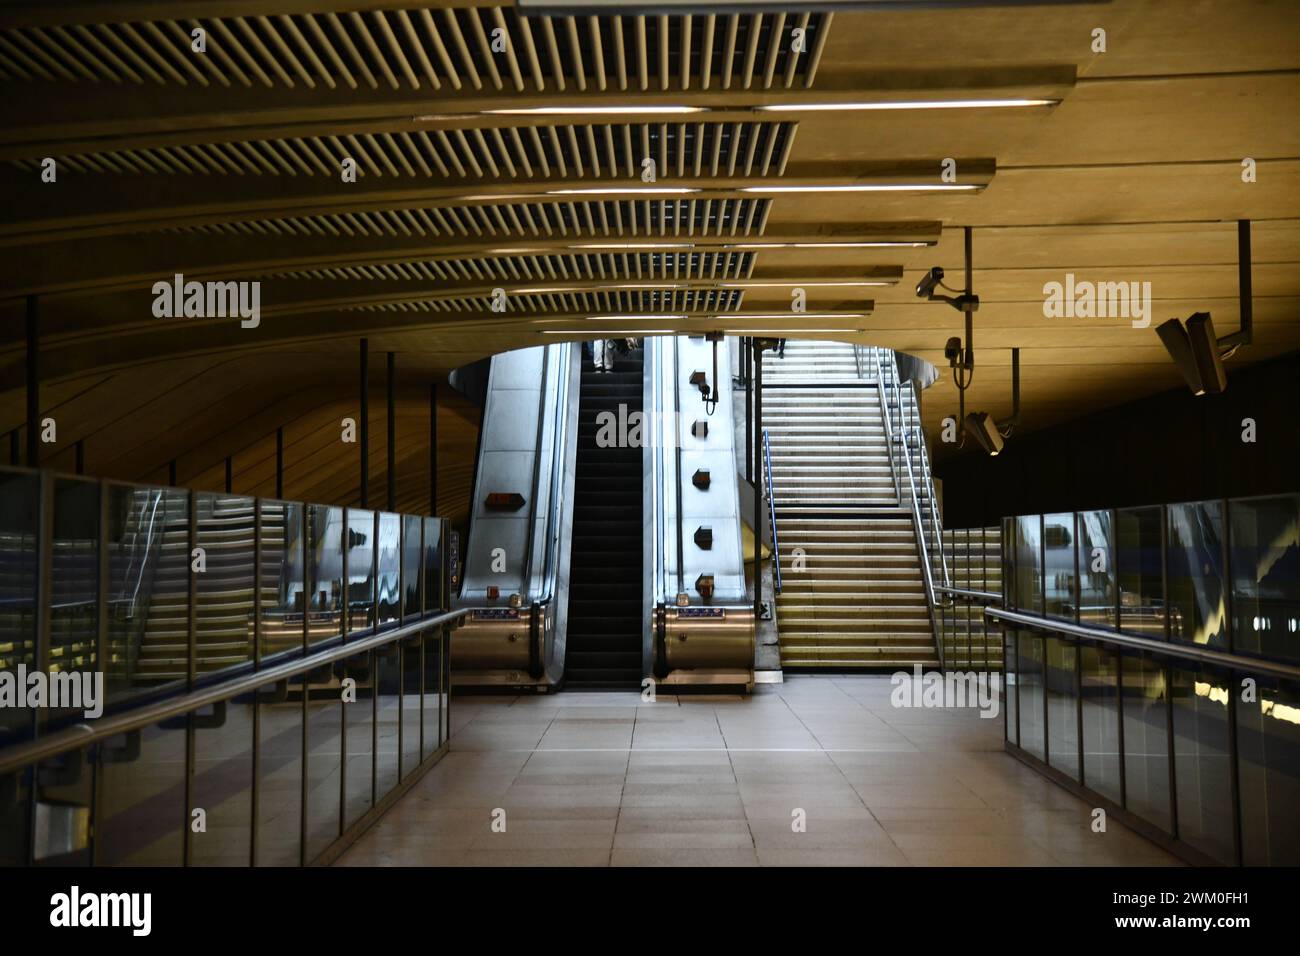 Canary Wharf Station Stock Photo